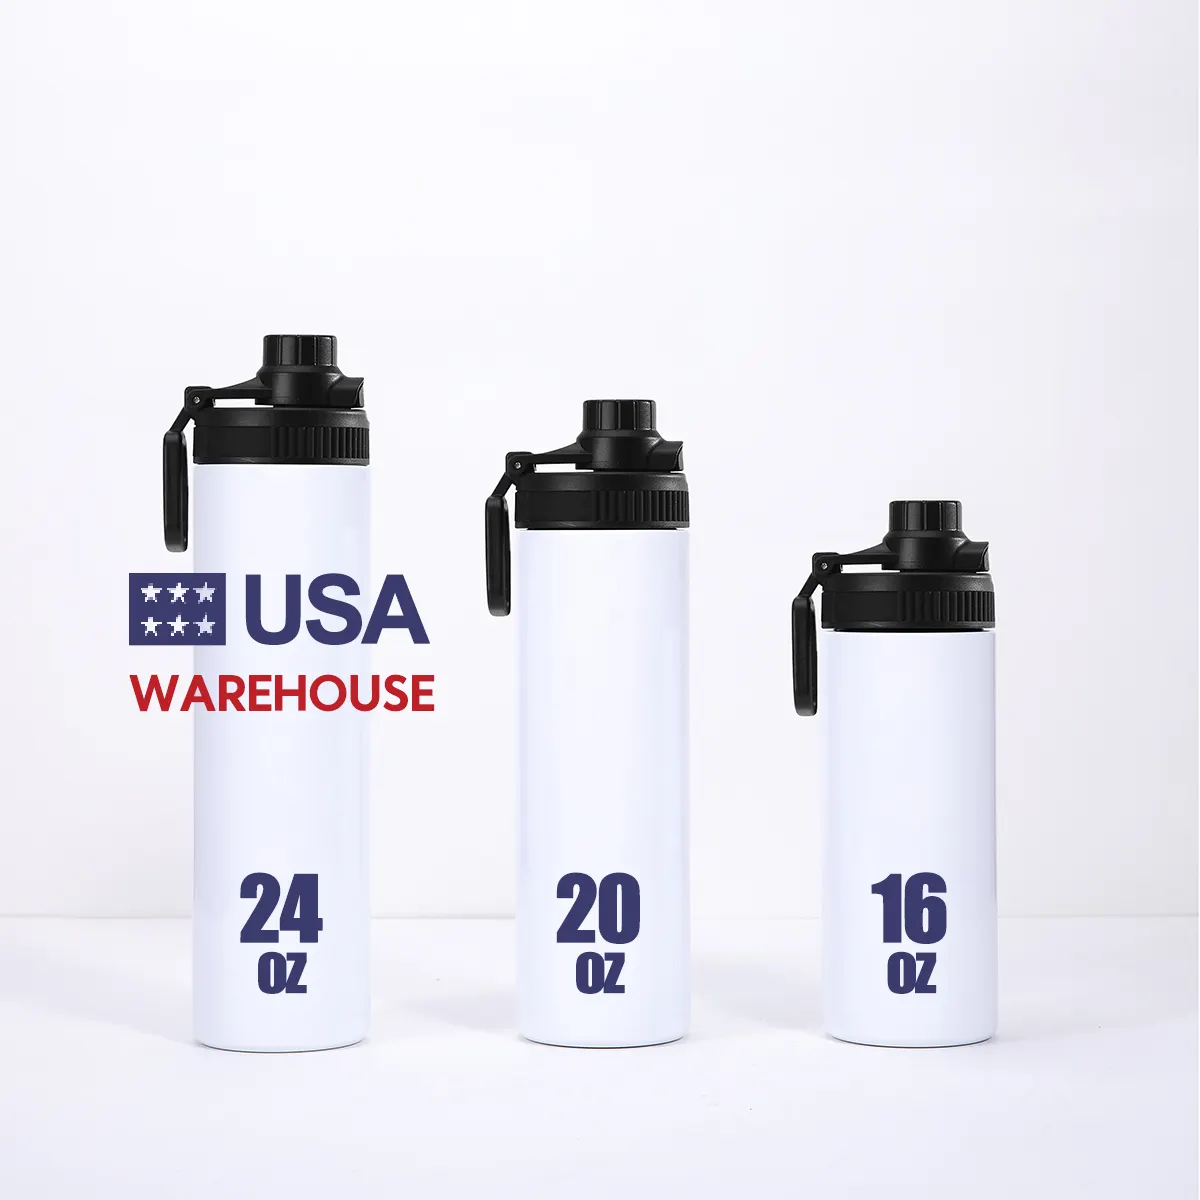 USA Warehouse Hot Selling Weiß Sublimation Edelstahl Gerade Weithals Sport Wasser flasche Vakuum isolierte Wasser flasche